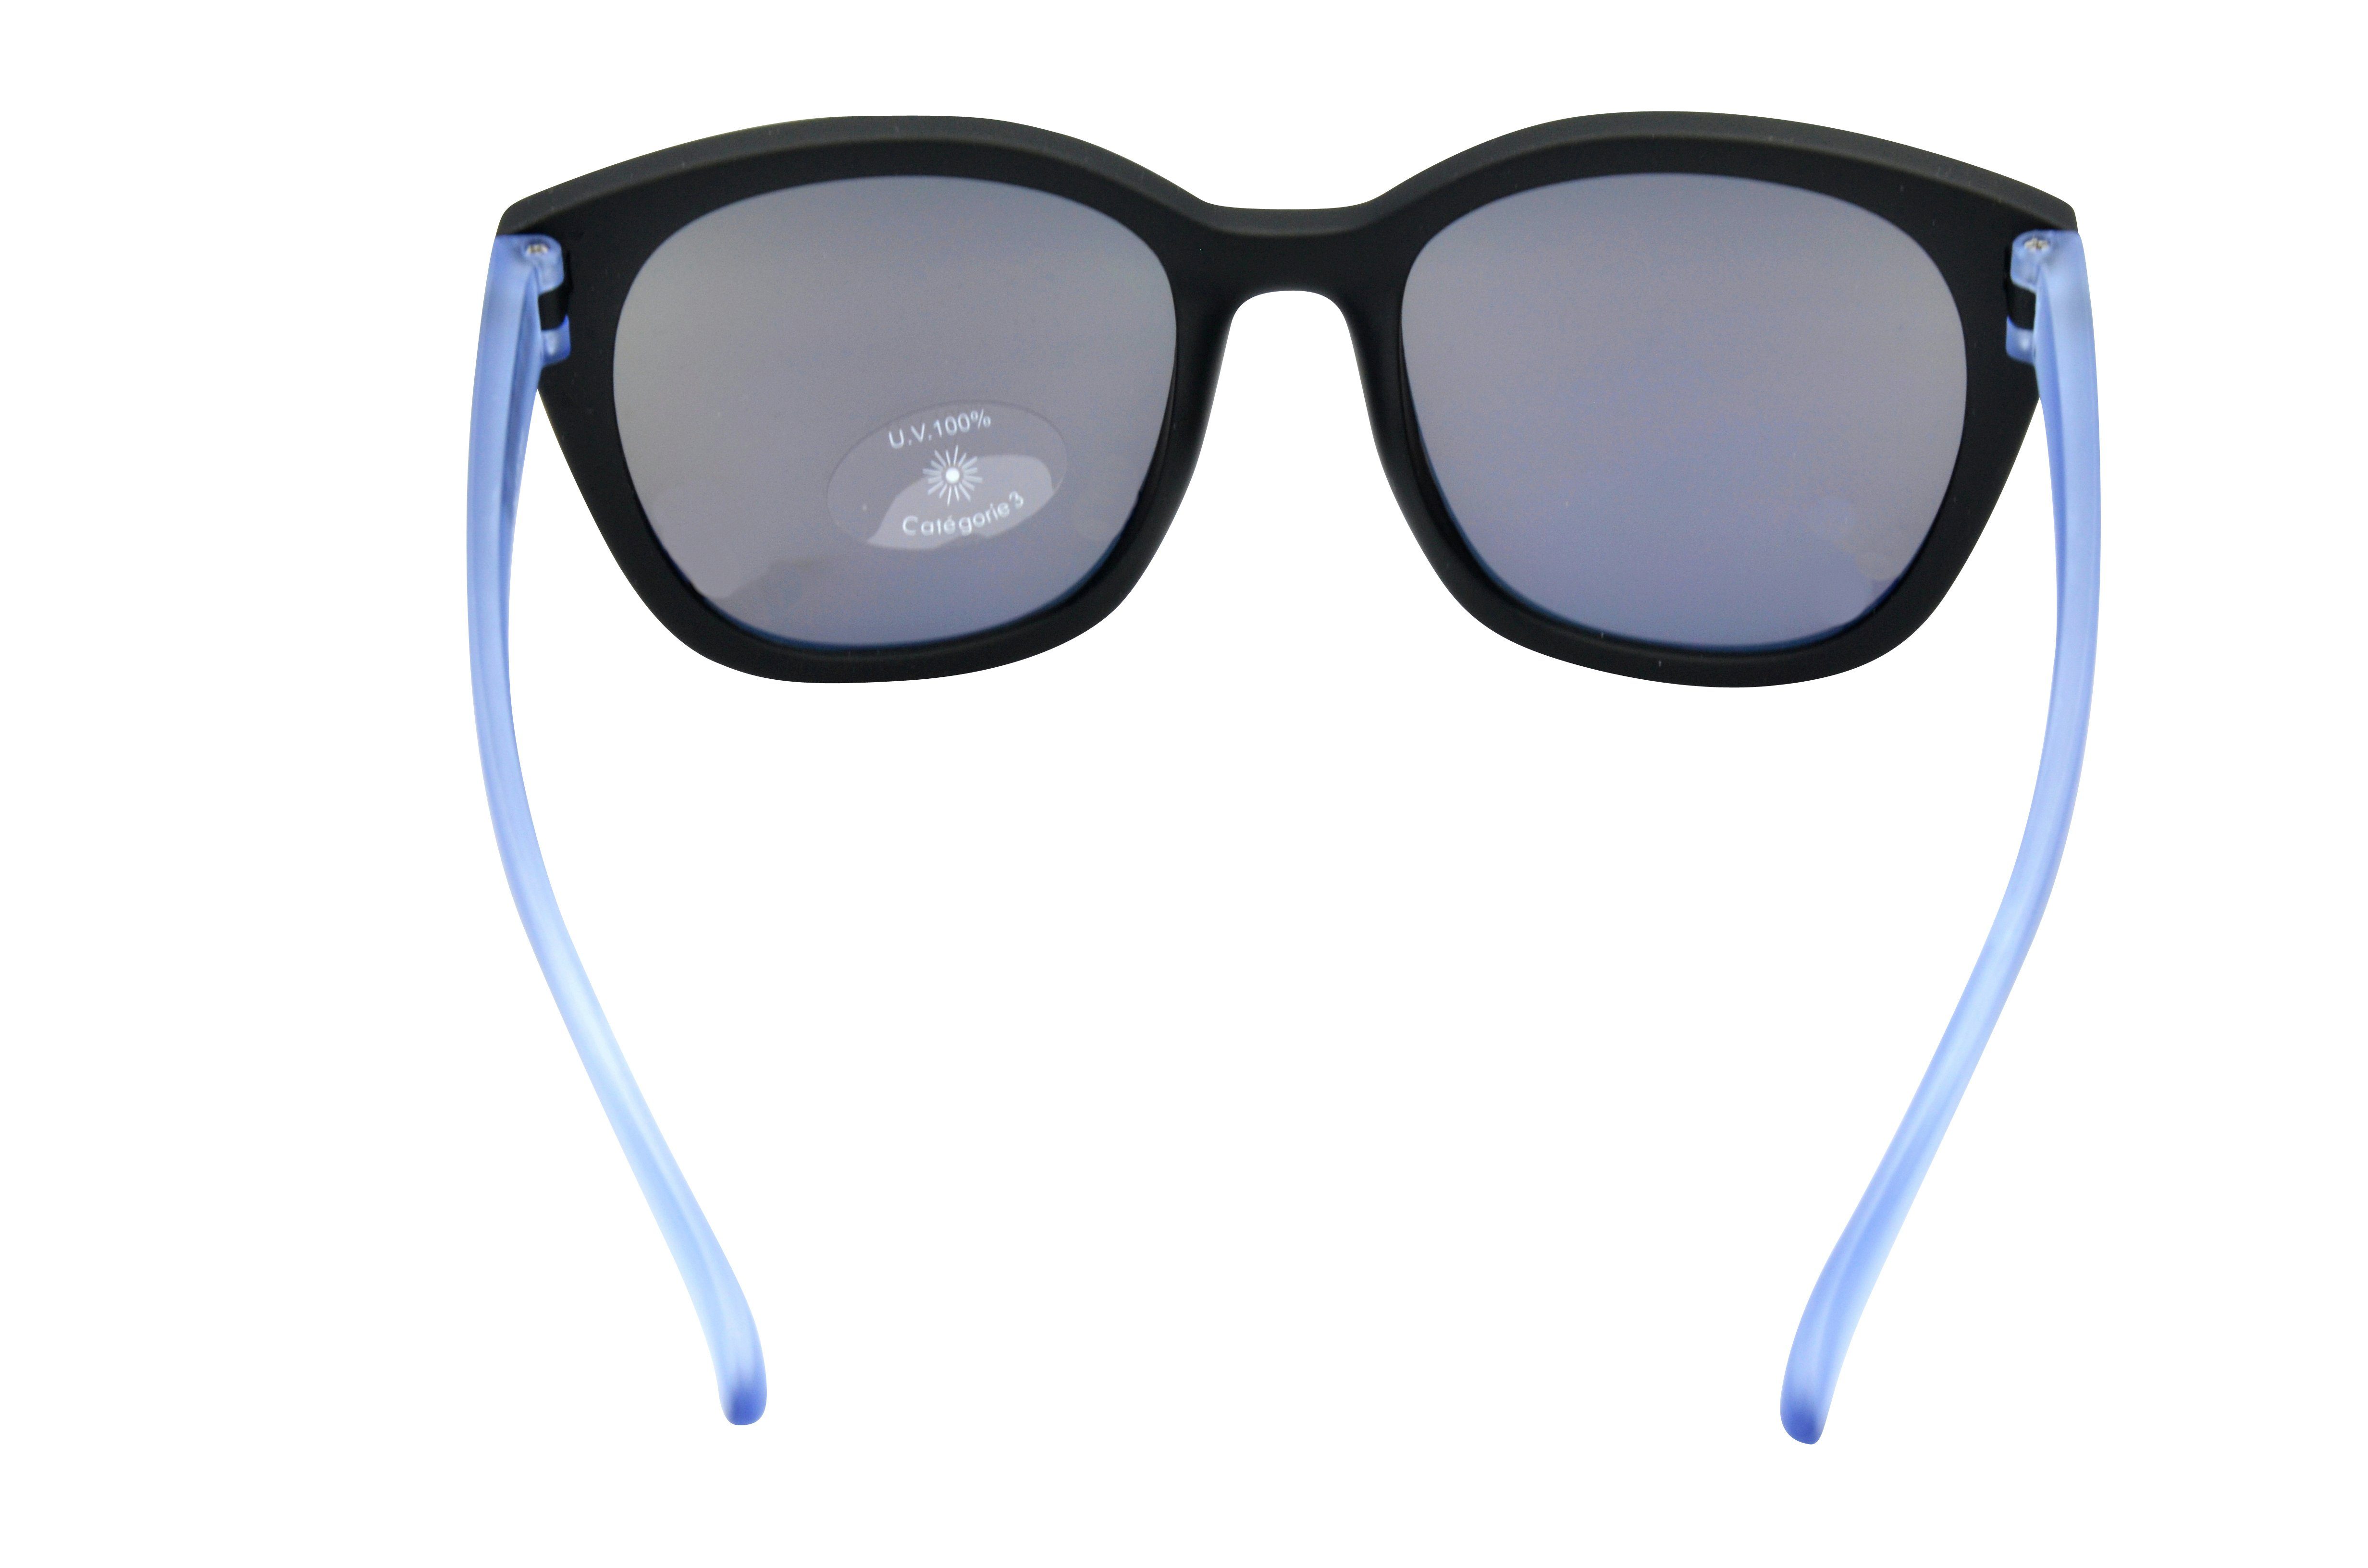 GAMSKIDS kids grau Jahre Rahmen Jugendbrille Unisex, halbtransparenter Damen Gamswild Sonnenbrille 8-18 Mädchen Kinderbrille pink, blau, WJ7517